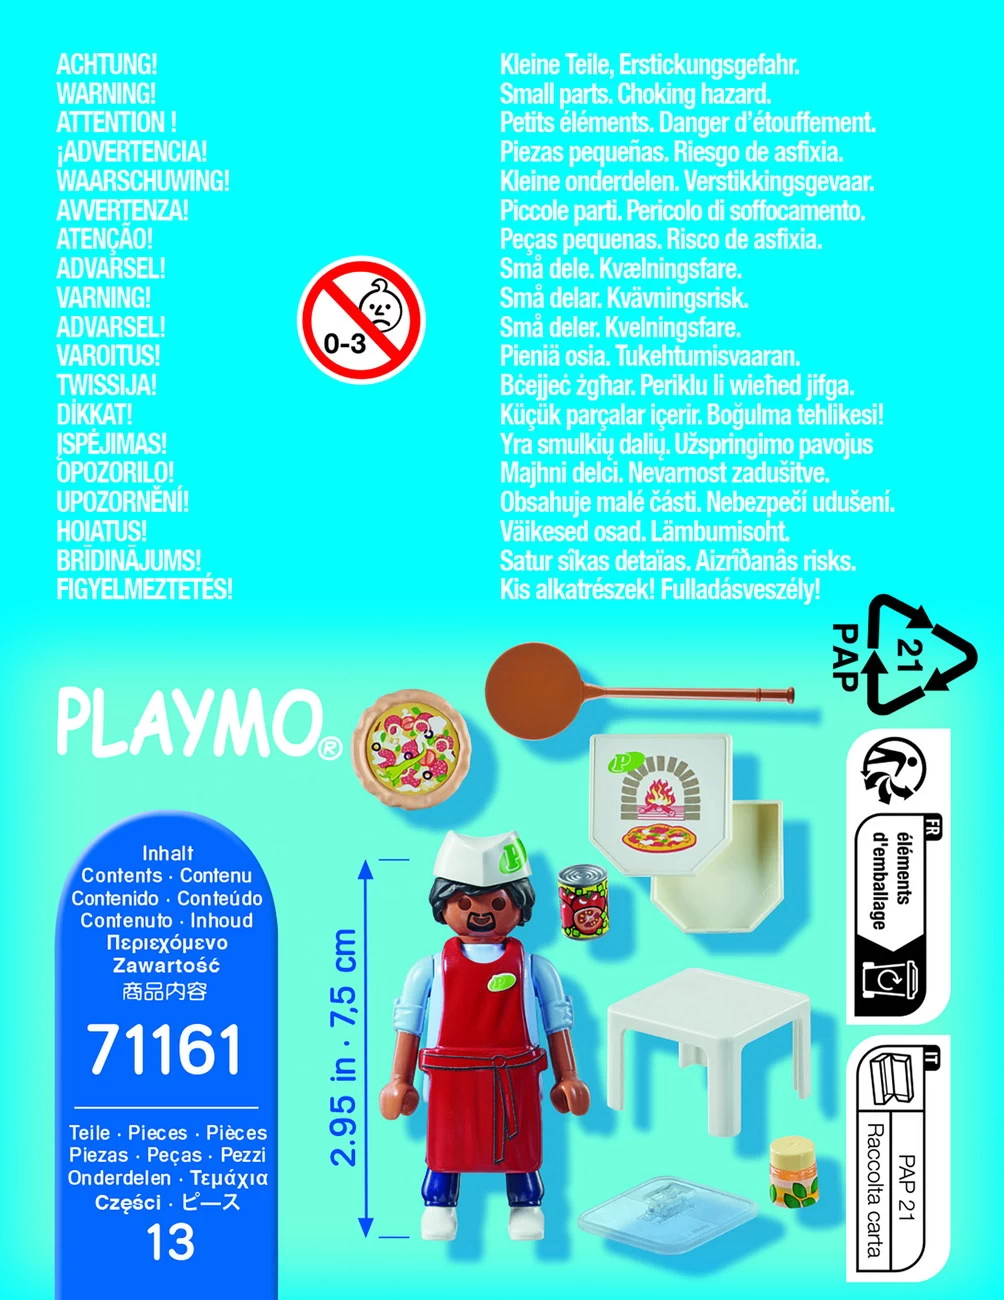 Playmobil 71161 - Pizzabäcker - Special Plus